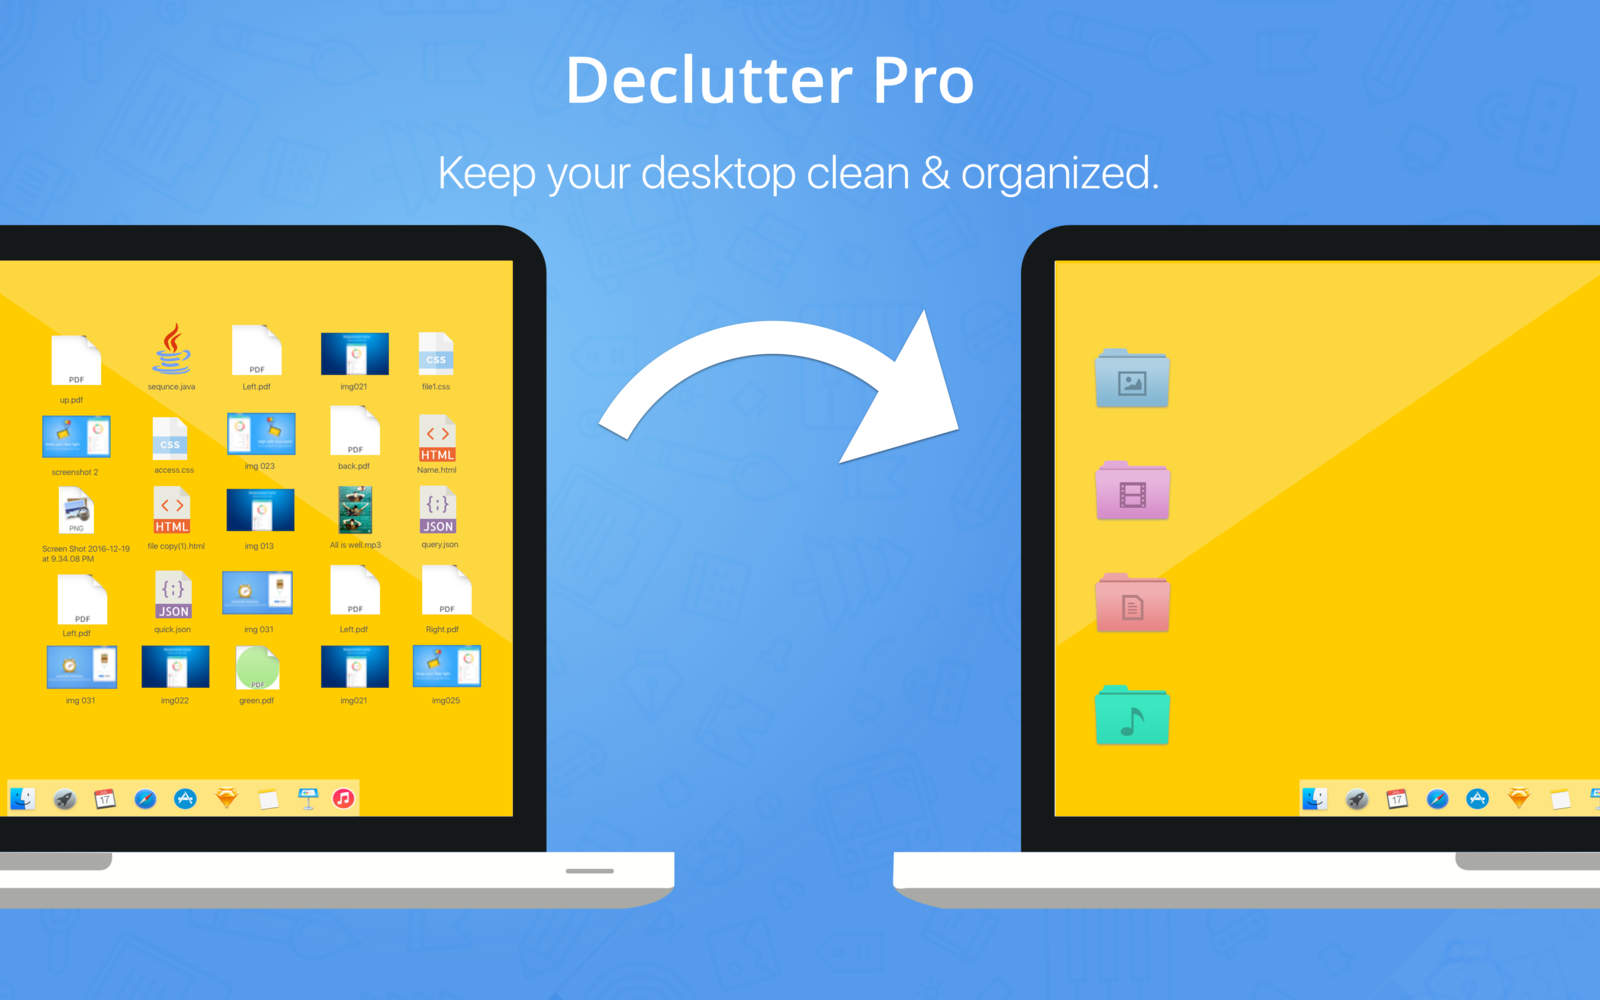 Declutter Pro 1.0 : Main Window